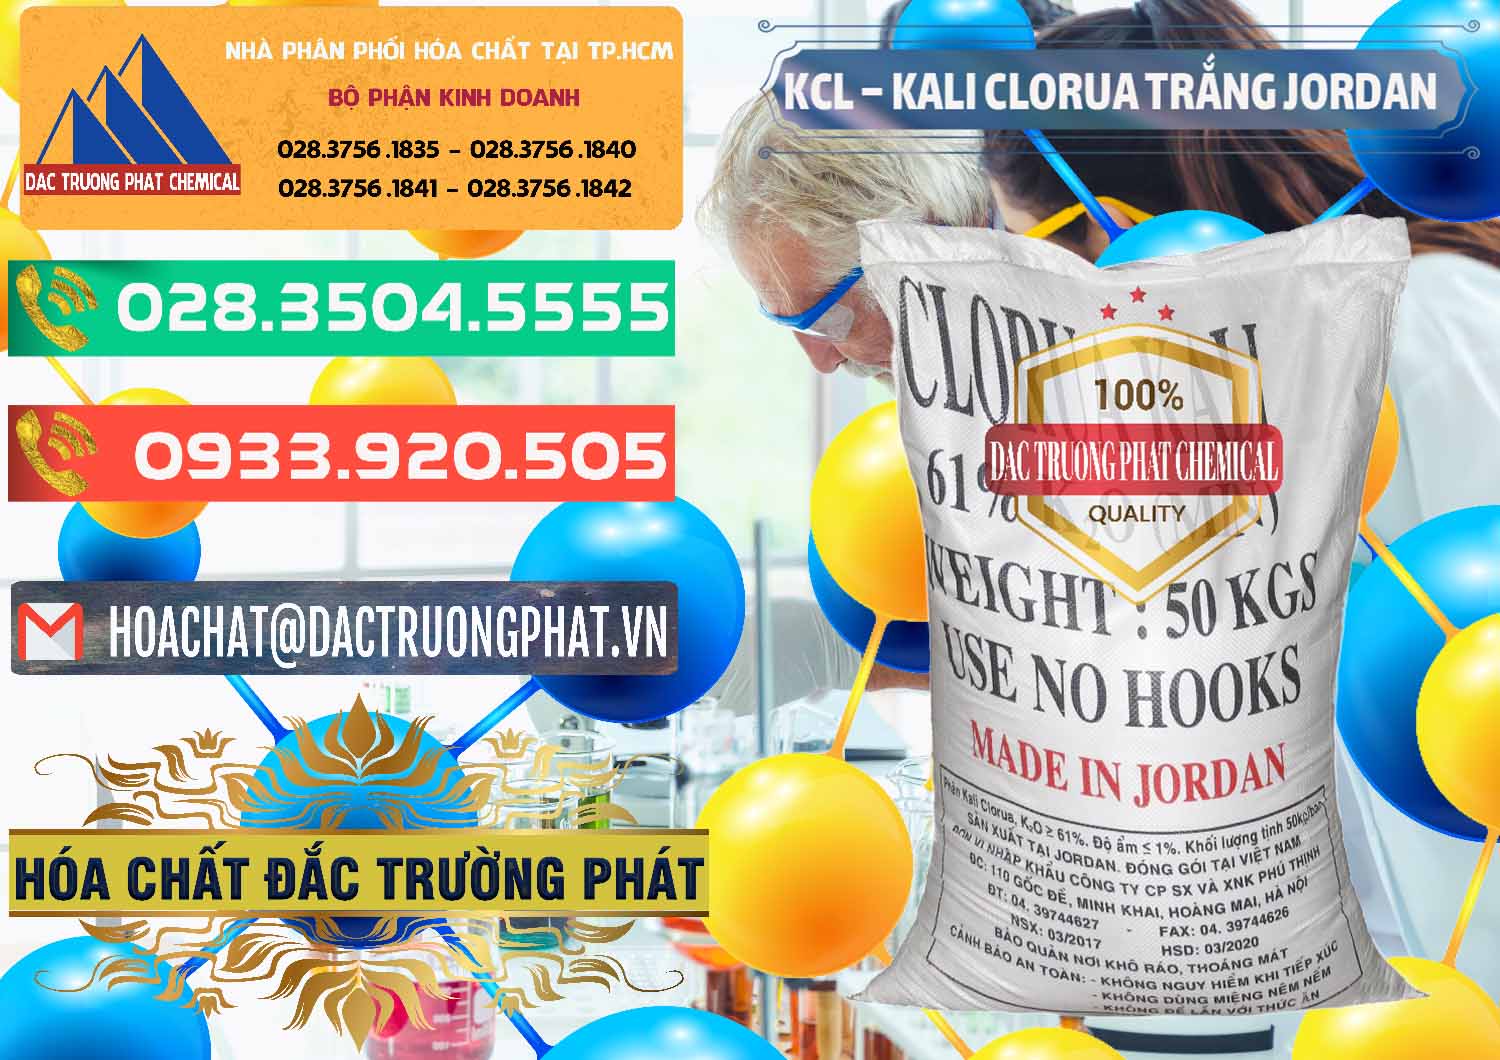 Cty bán và phân phối KCL – Kali Clorua Trắng Jordan - 0088 - Chuyên bán và phân phối hóa chất tại TP.HCM - congtyhoachat.com.vn